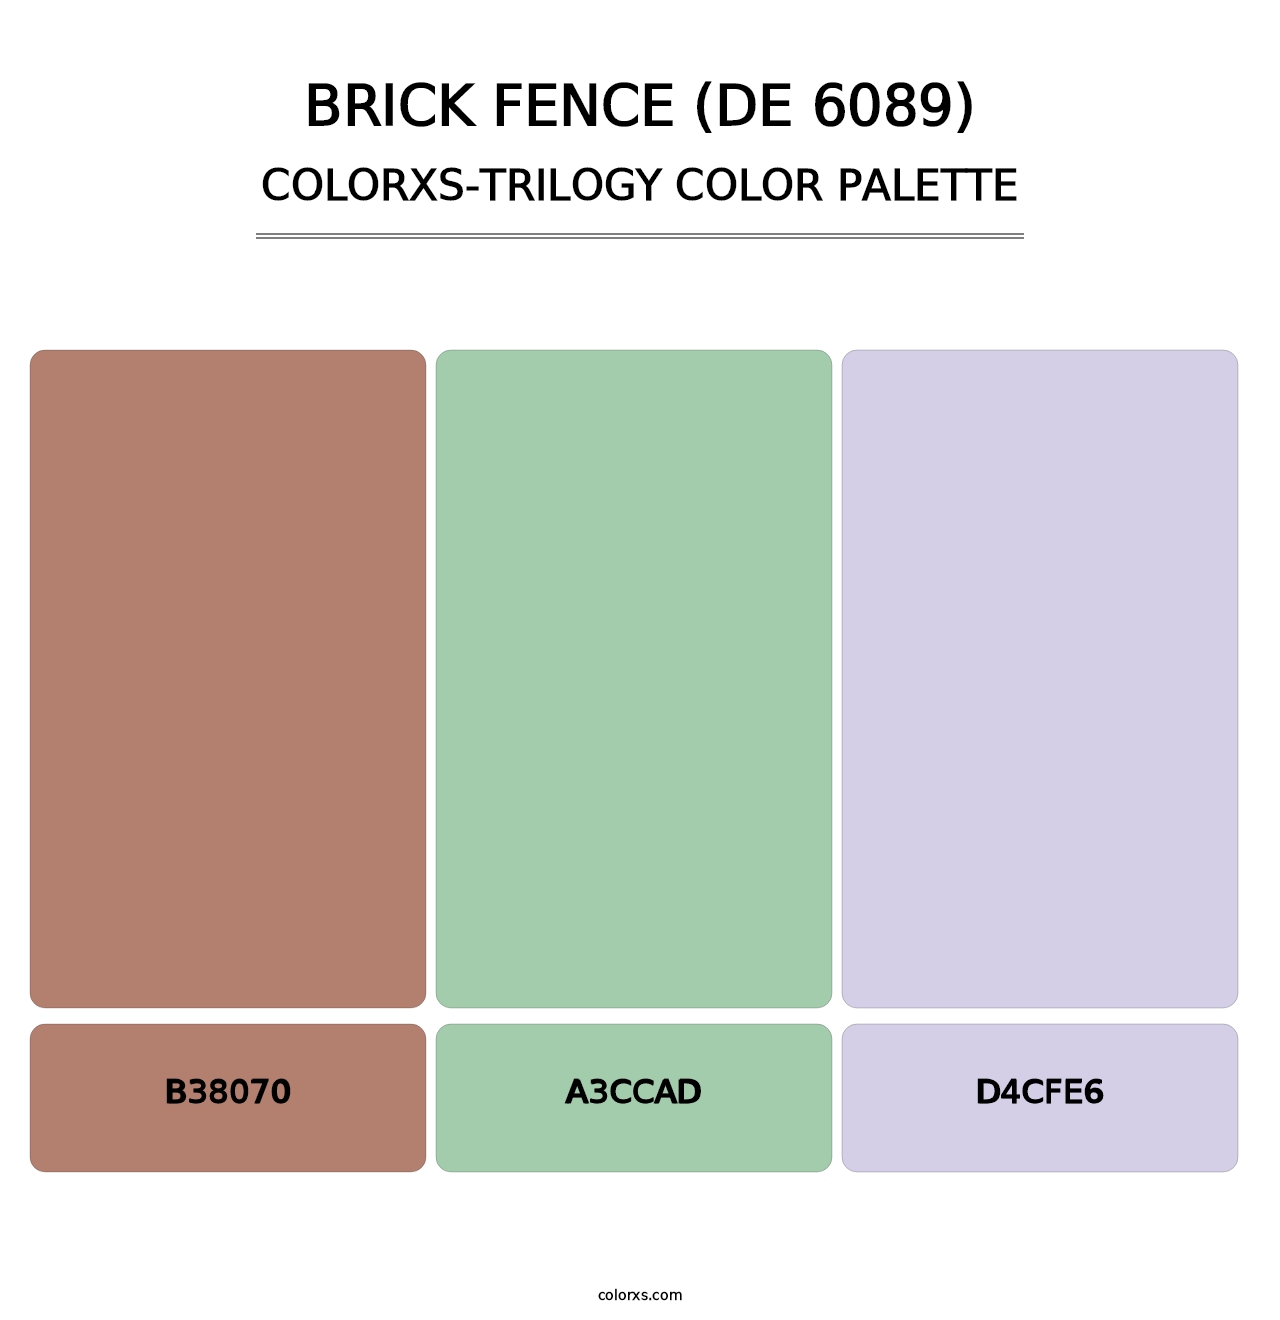 Brick Fence (DE 6089) - Colorxs Trilogy Palette